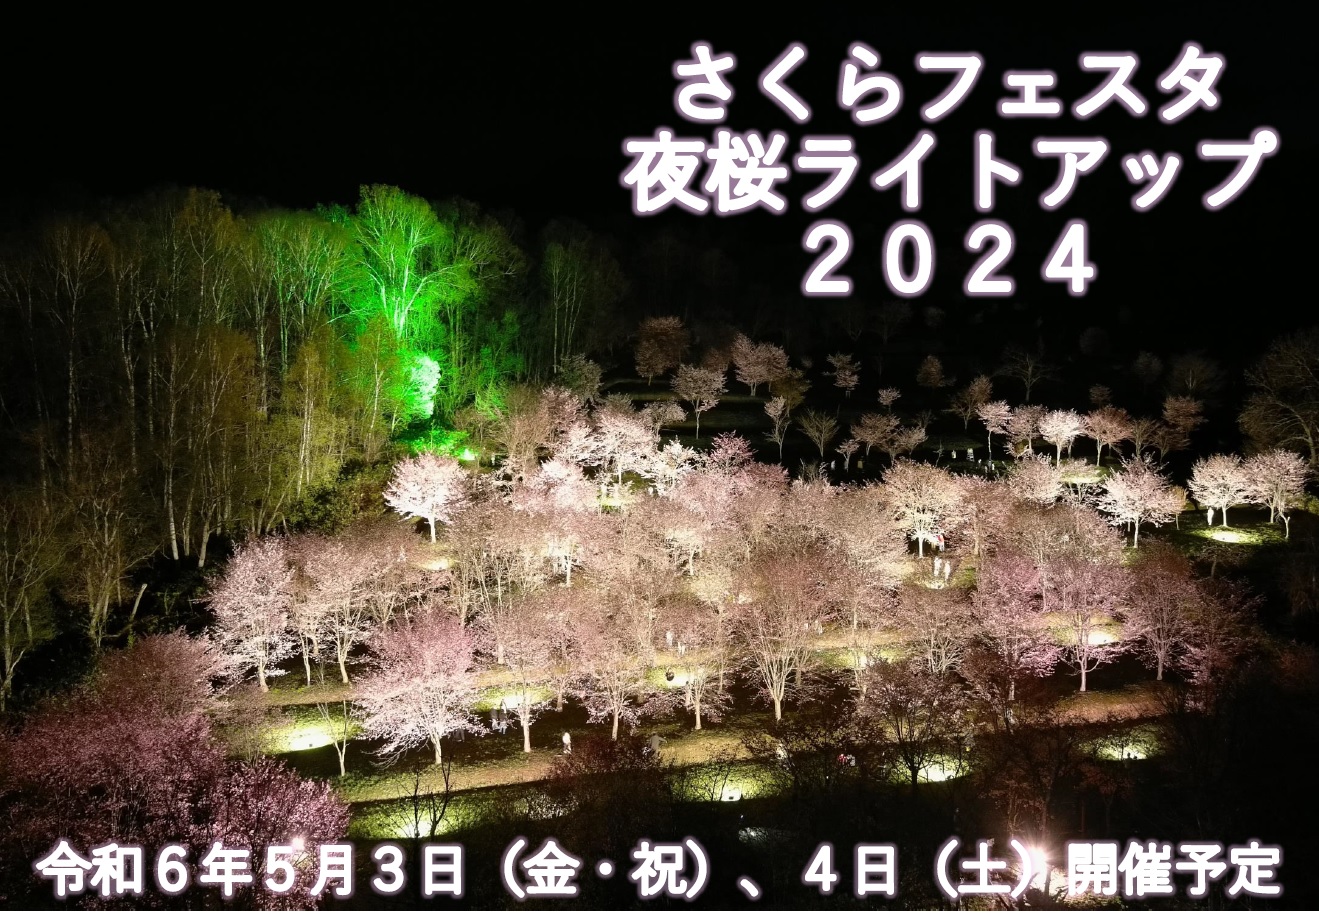 さくらフェスタ・夜桜ライトアップ2024